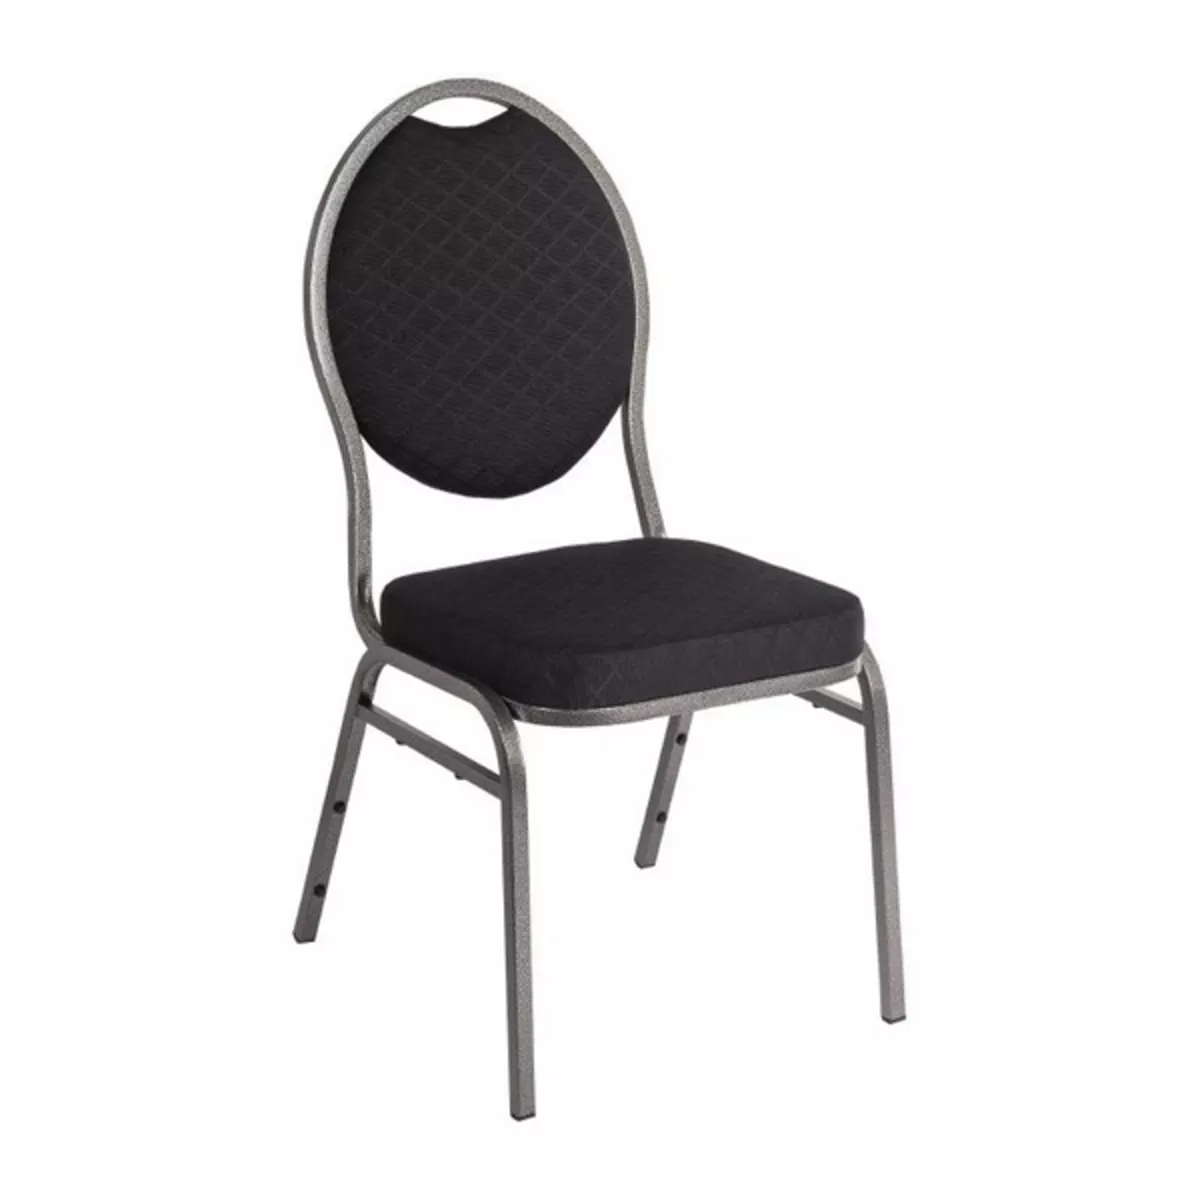 Stack chair zwart